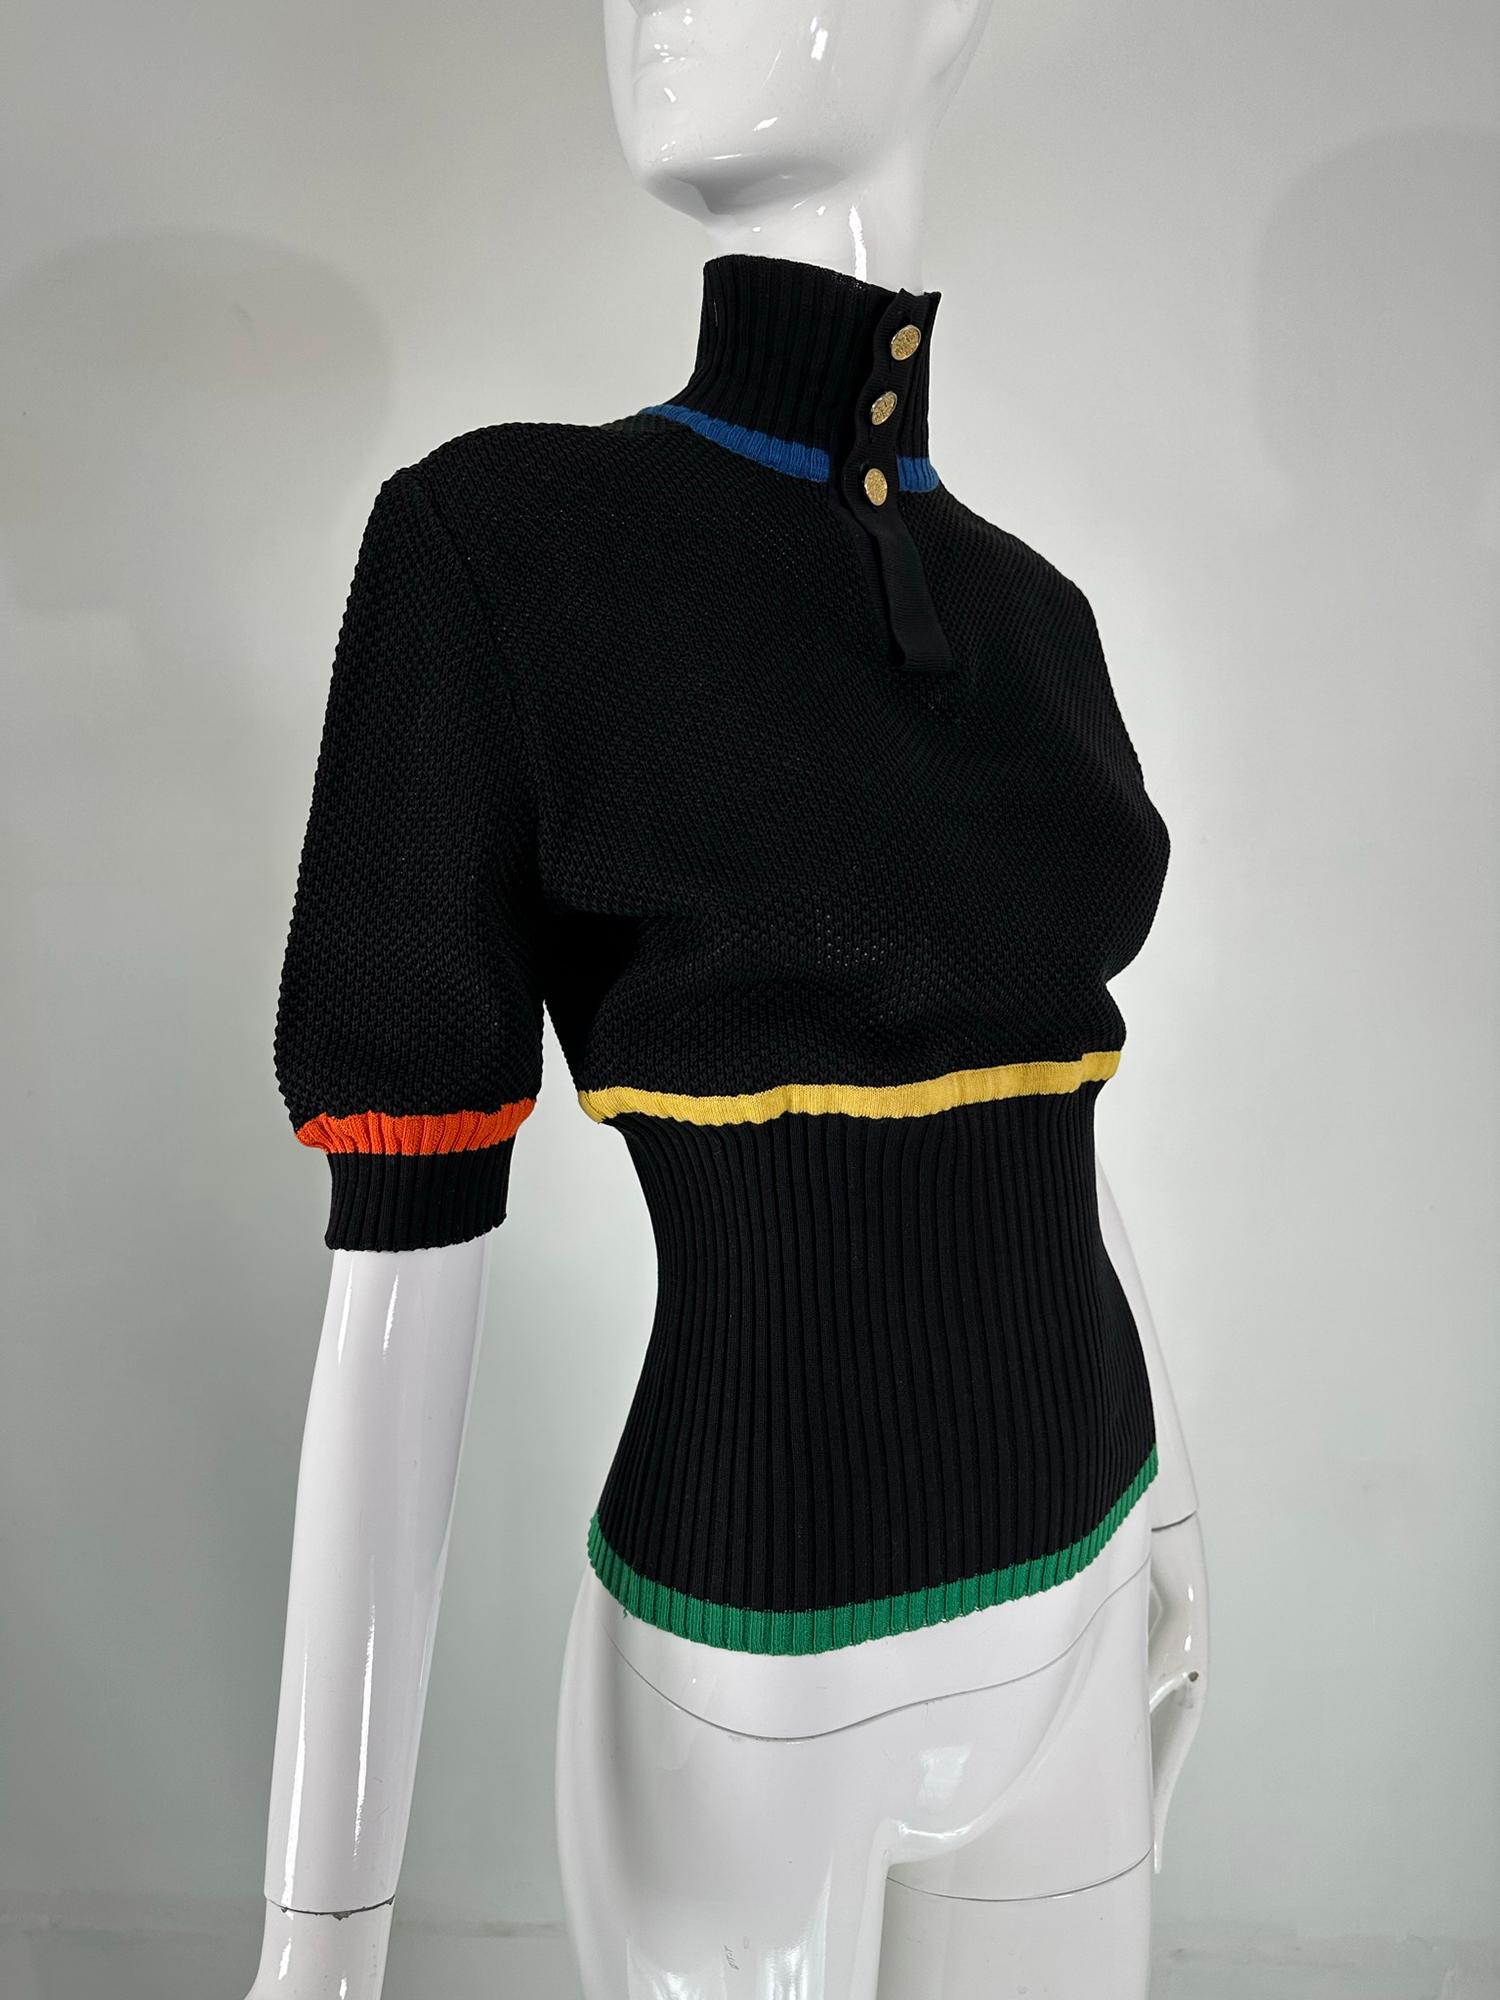 Boutique Chanel Pull en coton noir crocheté et tricoté avec rayures de couleur et boutons dorés du logo Chanel à l'encolure, une pièce rare de la fin des années 1980. Col à patte de boutonnage en tricot côtelé. Manches courtes bouffantes, col,